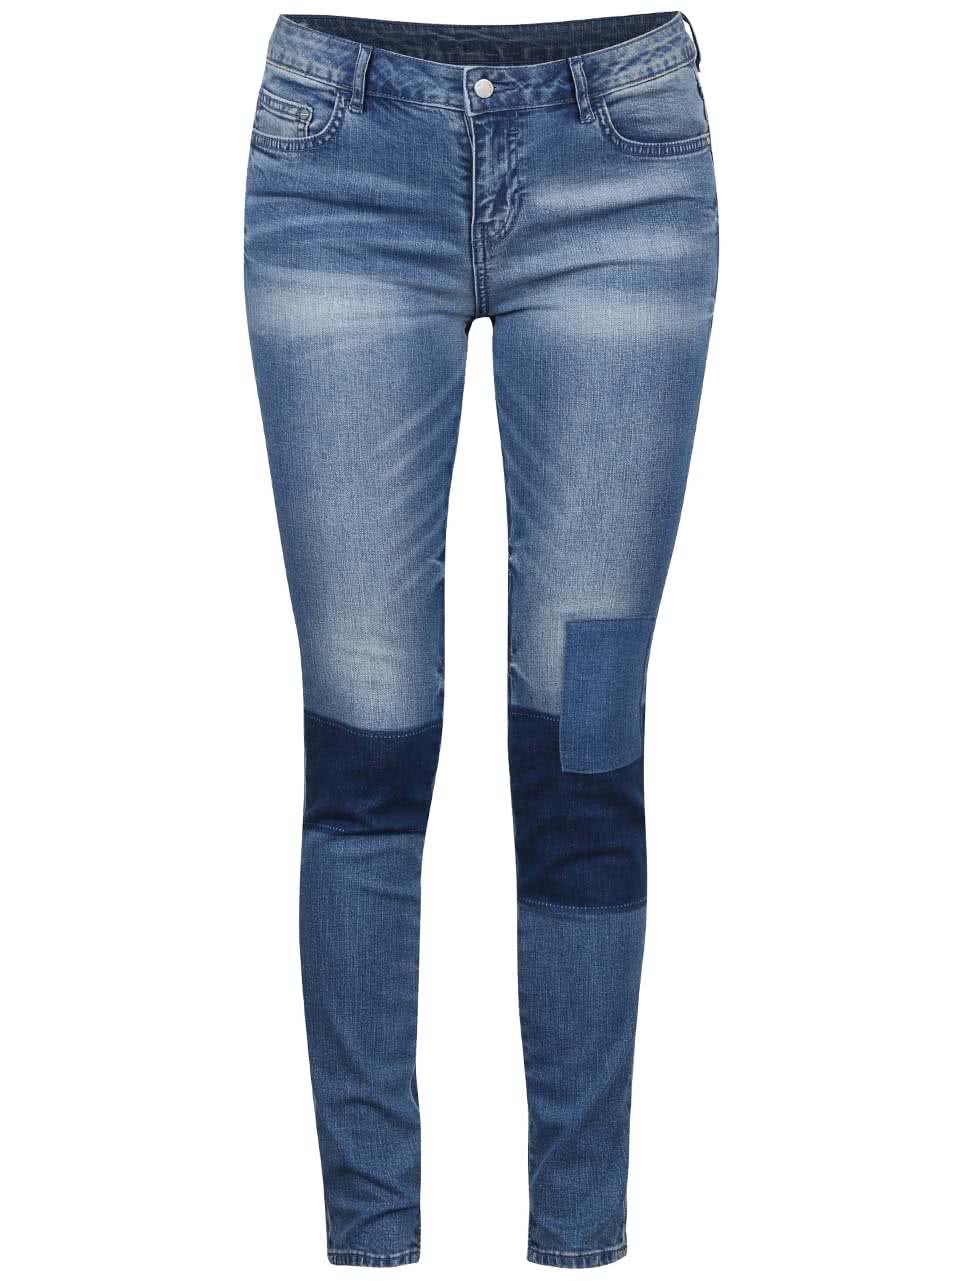 Modré džíny s tmavými koleny VILA